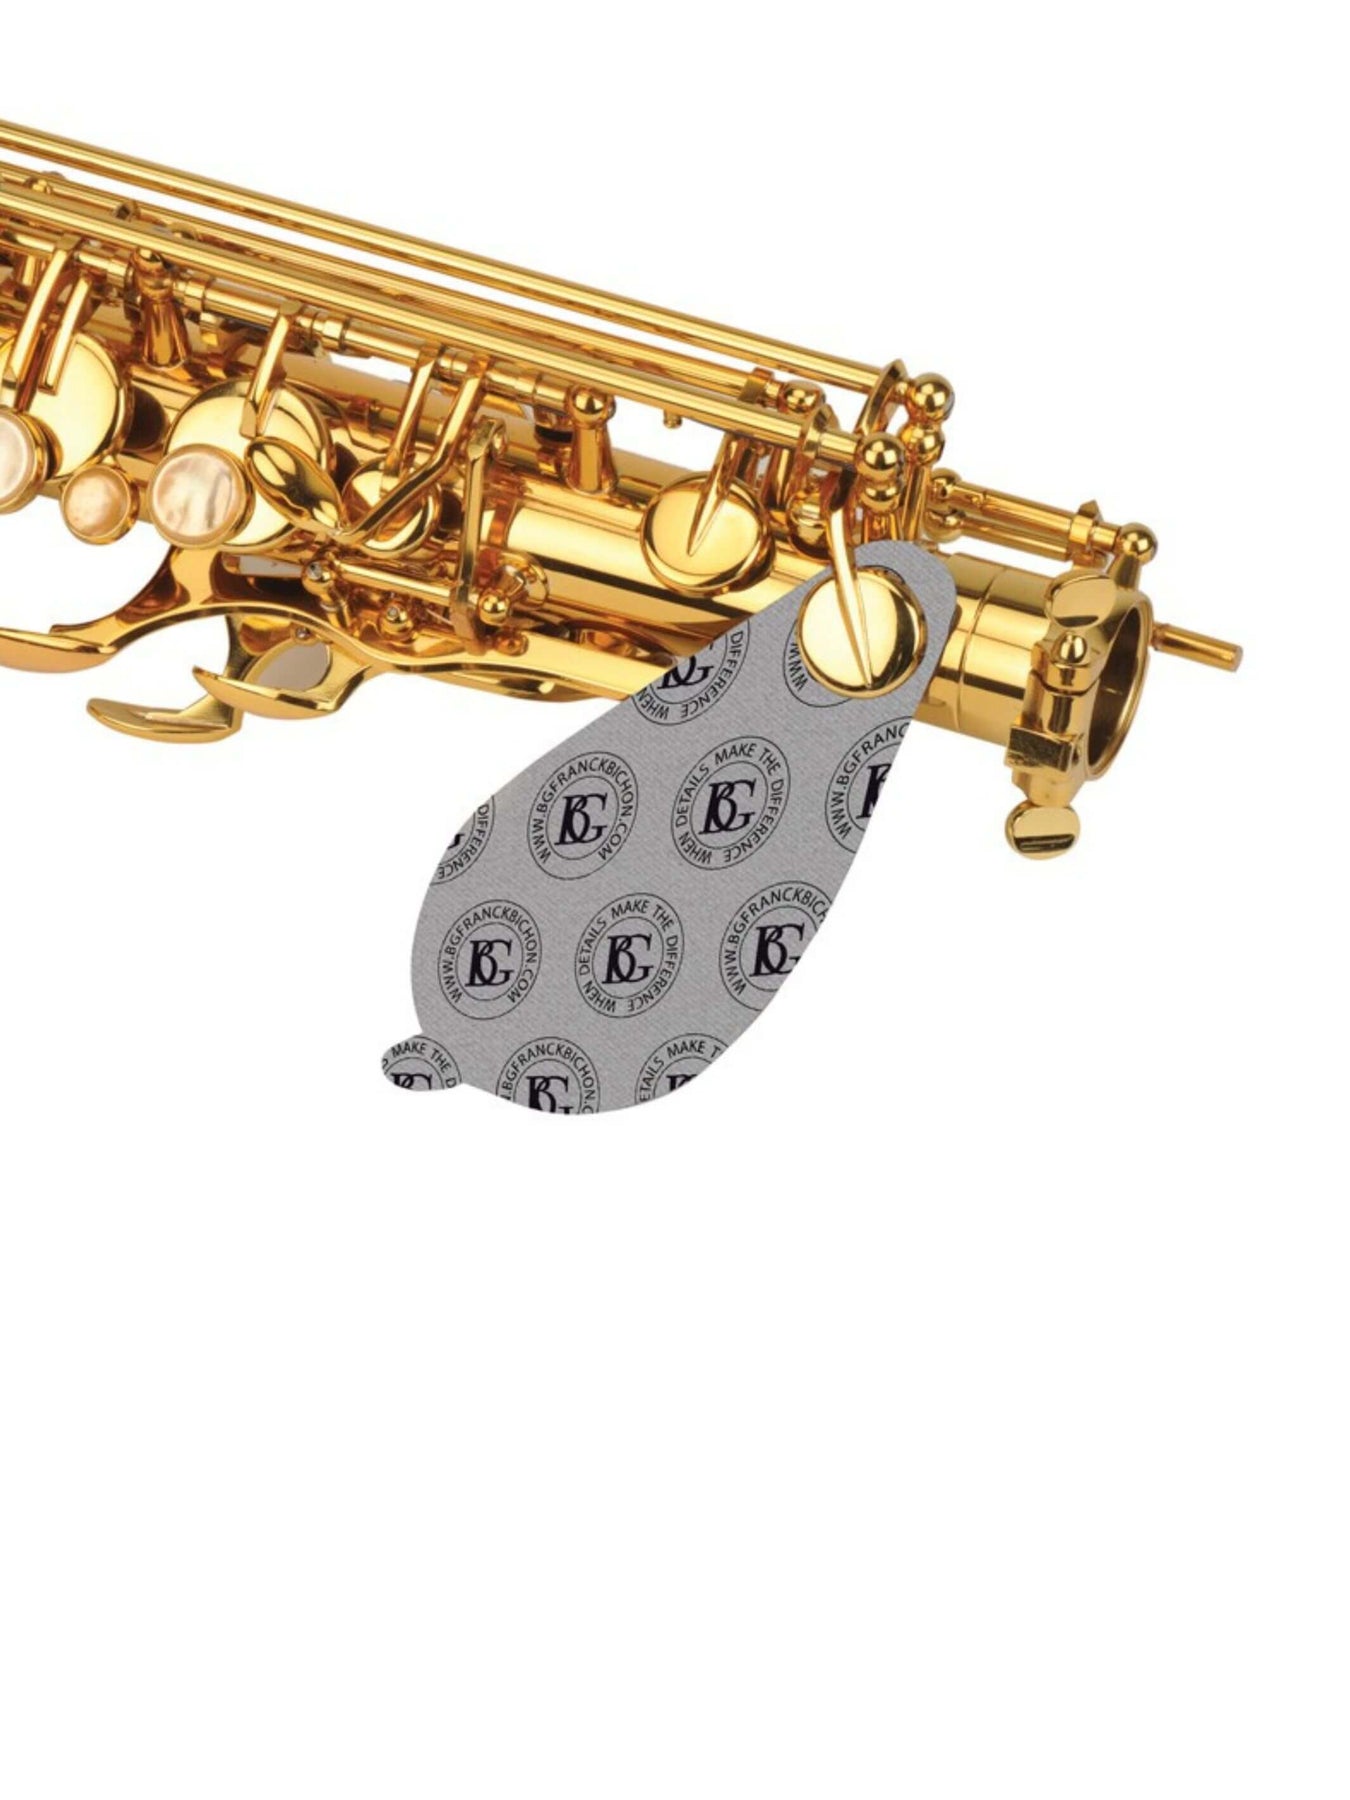 France BG CPSA – lingette de nettoyage pour saxophone ALTO, un